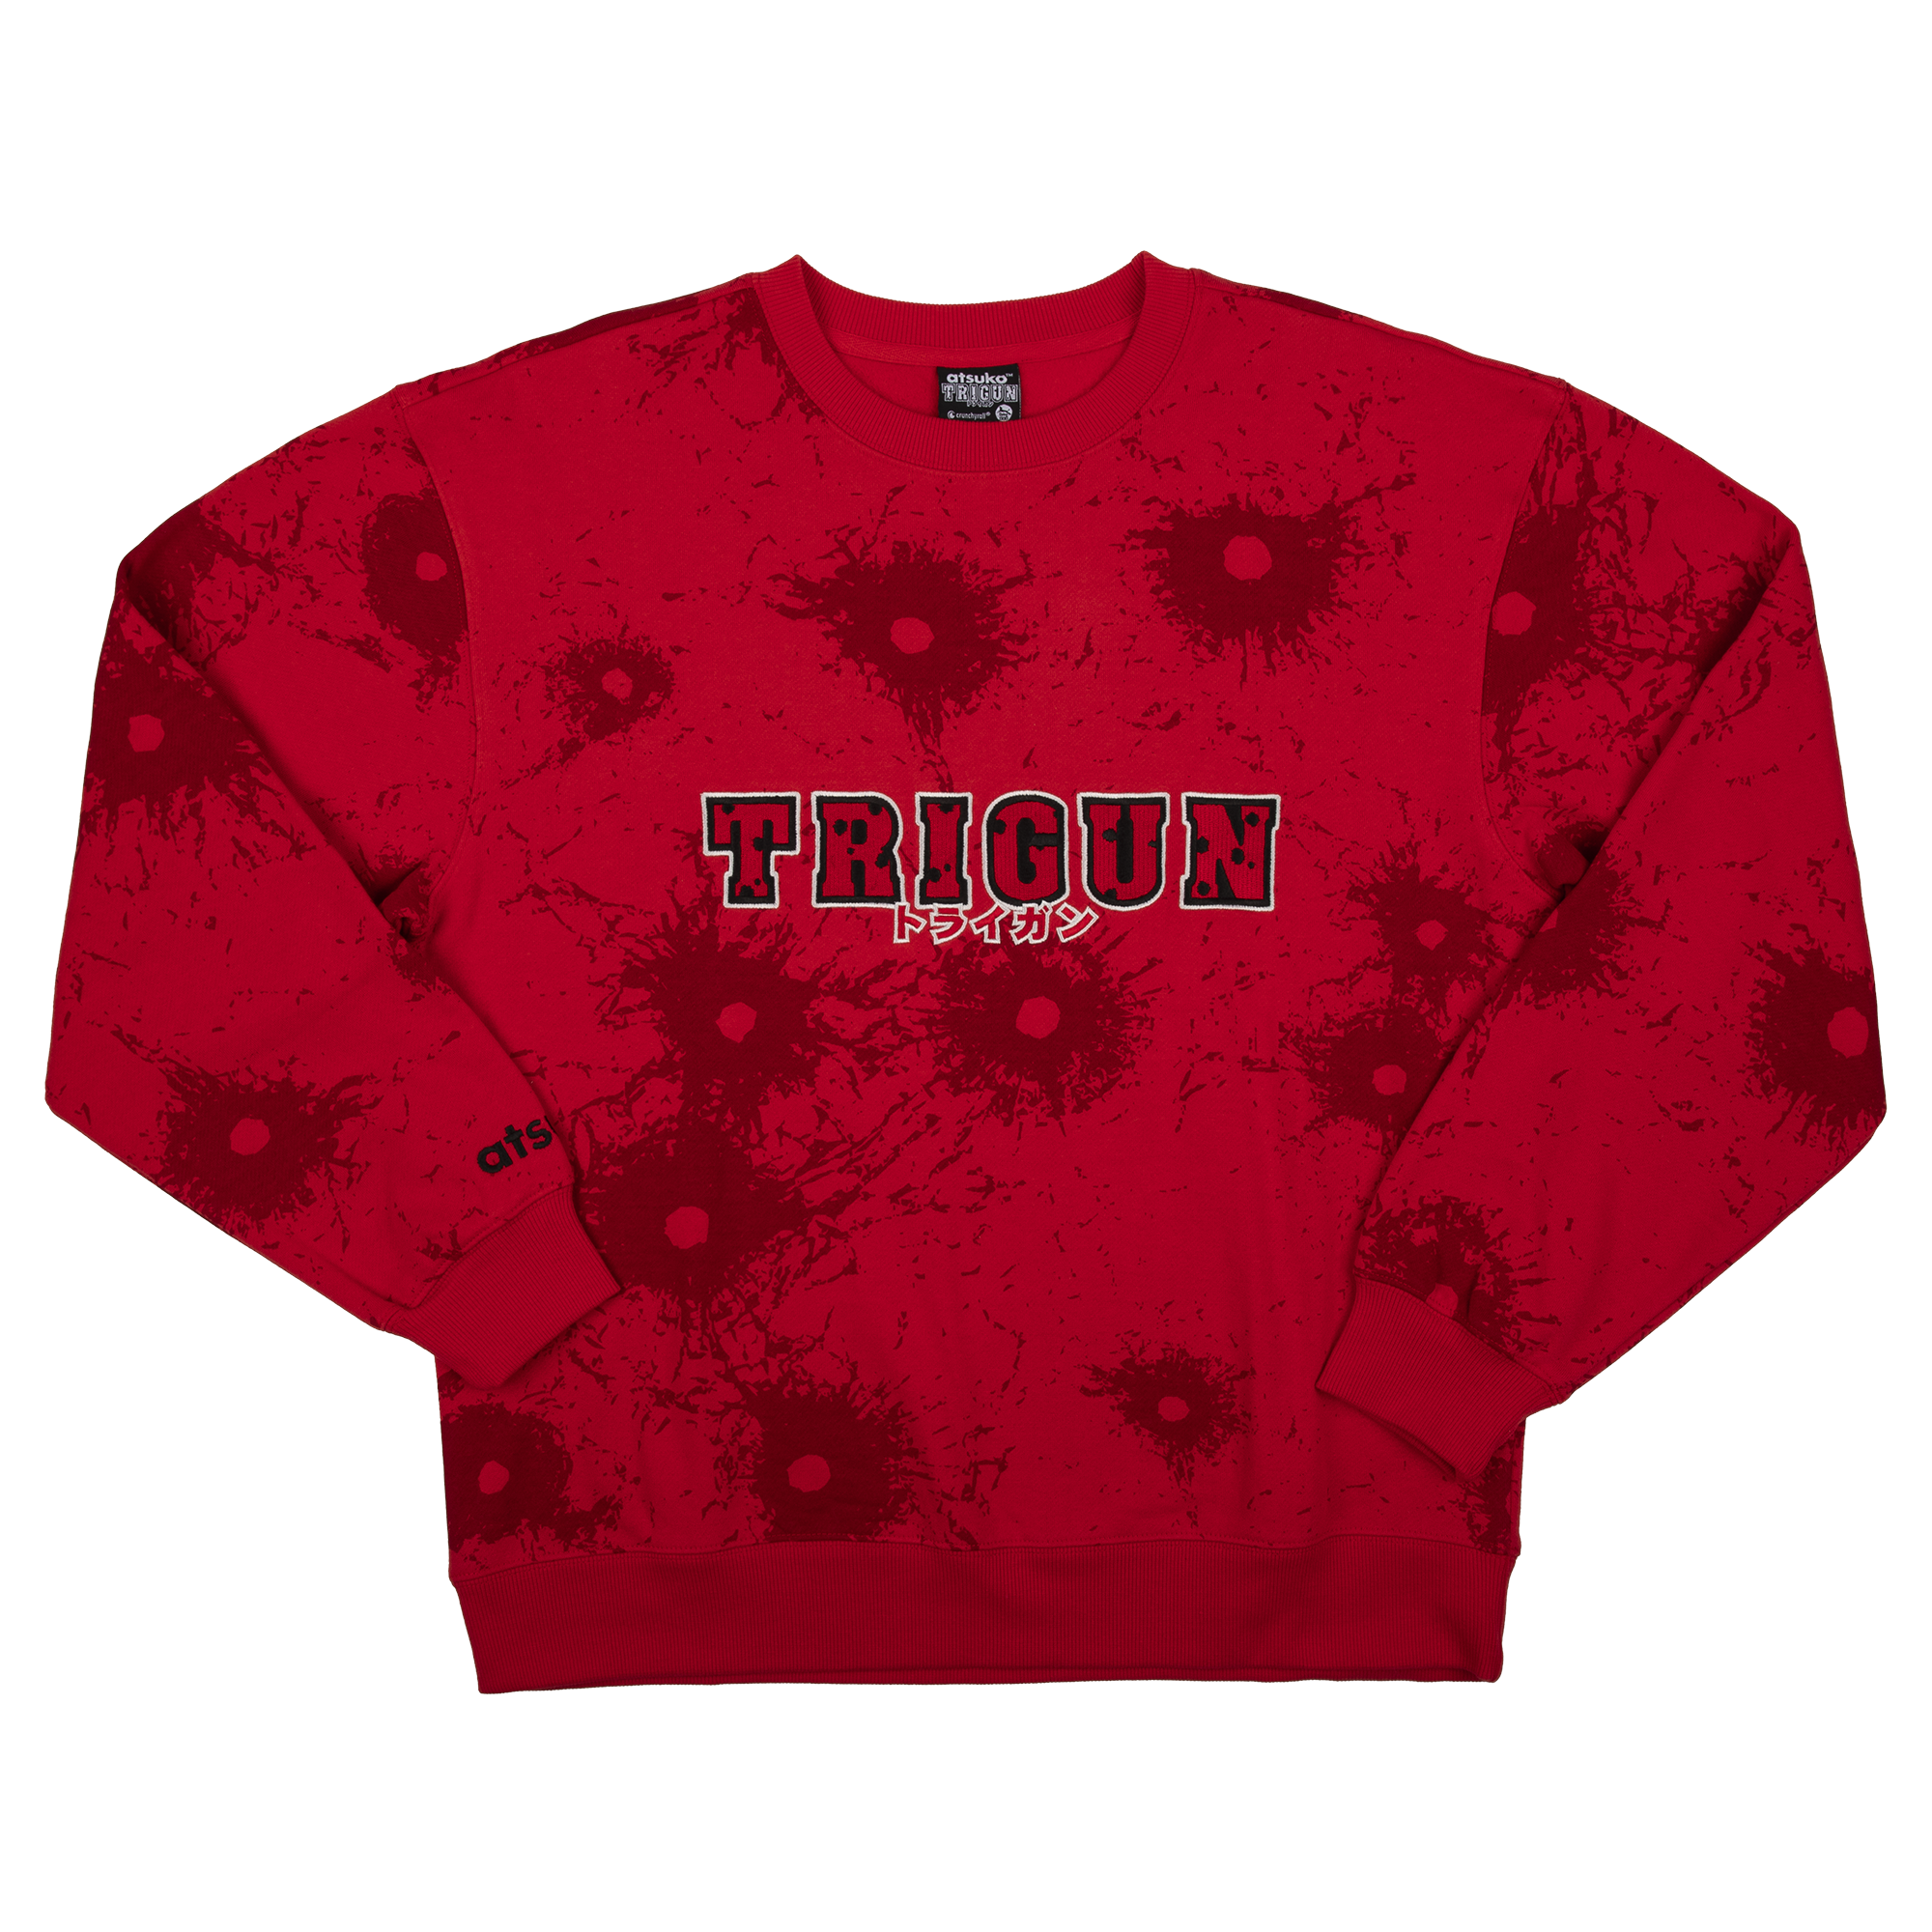 Trigun Red Crew Neck Sweatshirt